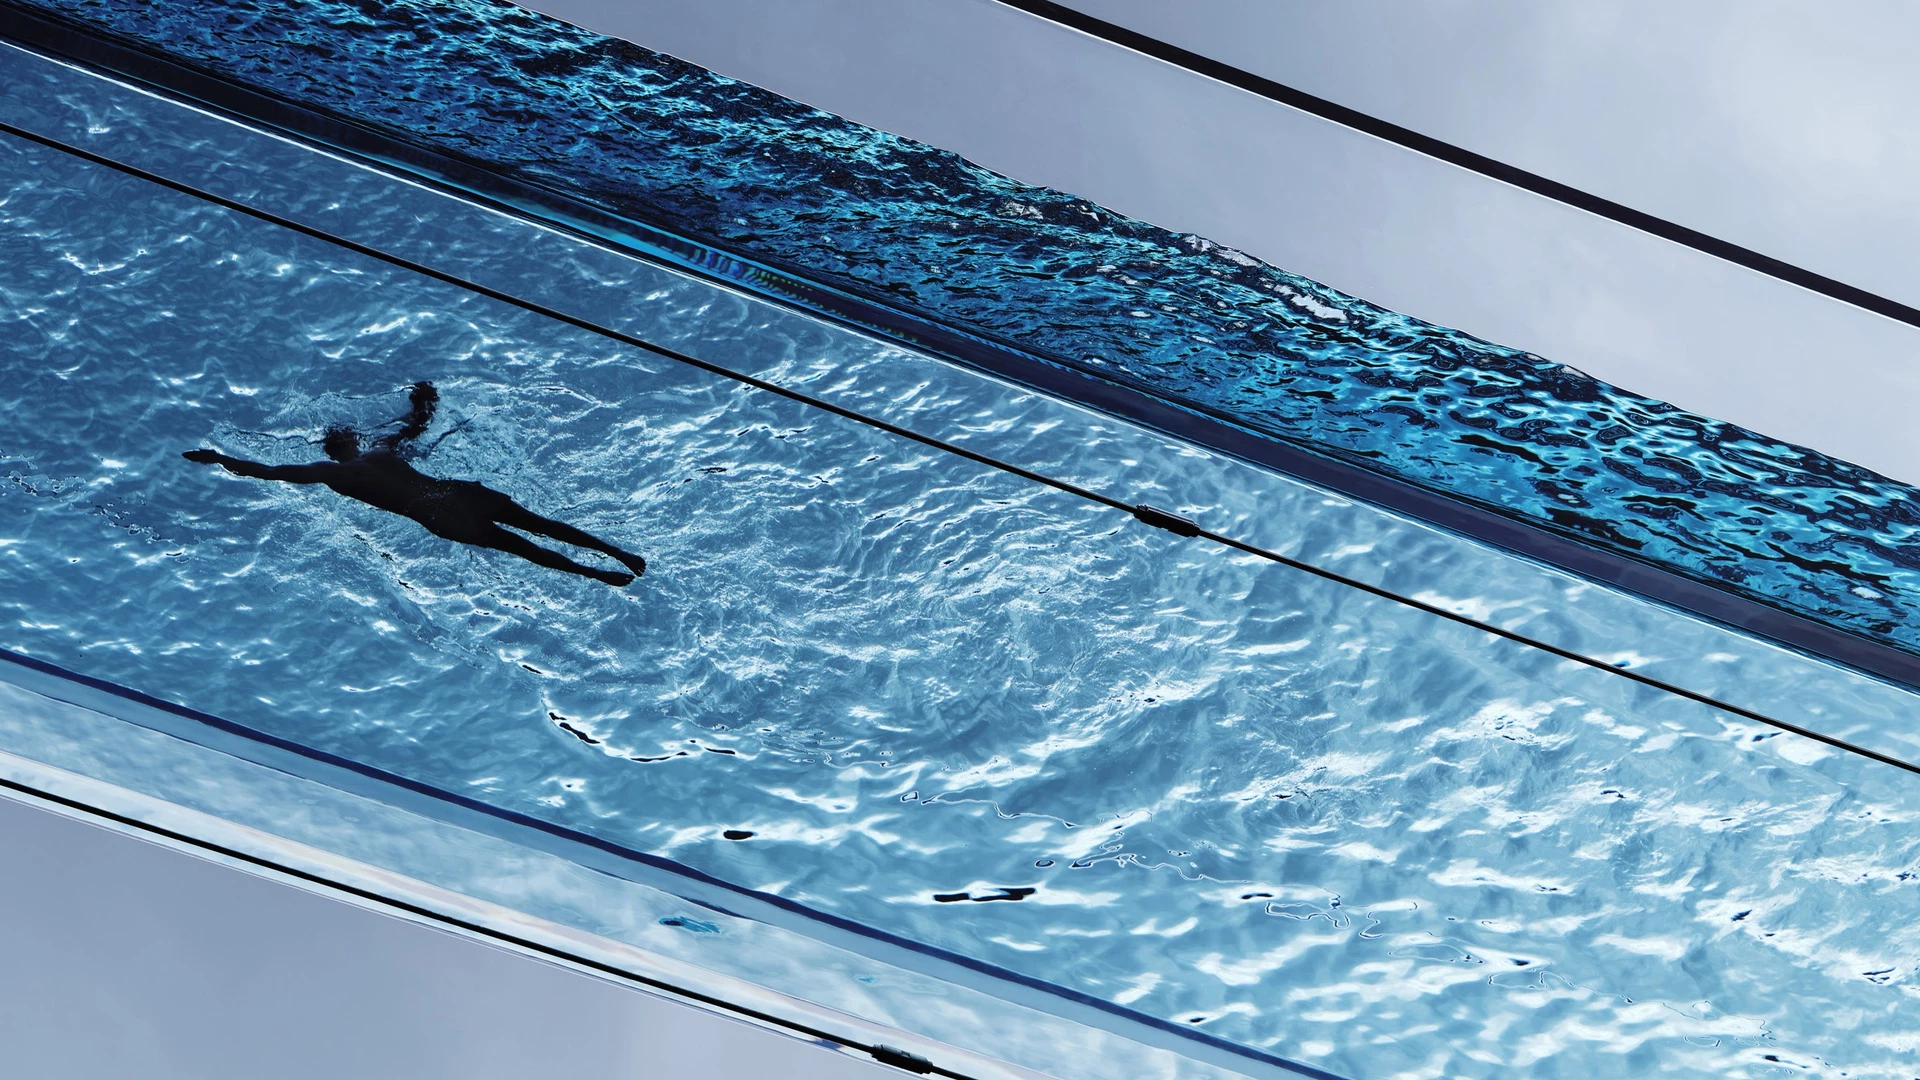 Hồ bơi có tên Sky Pool lơ lửng trên không trung đầu tiên trên thế giới sắp mở cửa đón khách tại London (Anh). Bể bơi dài 25 m trong suốt được thiết kế bởi đội ngũ kiến trúc sư của HAL Architects. Ảnh: Dezeen.